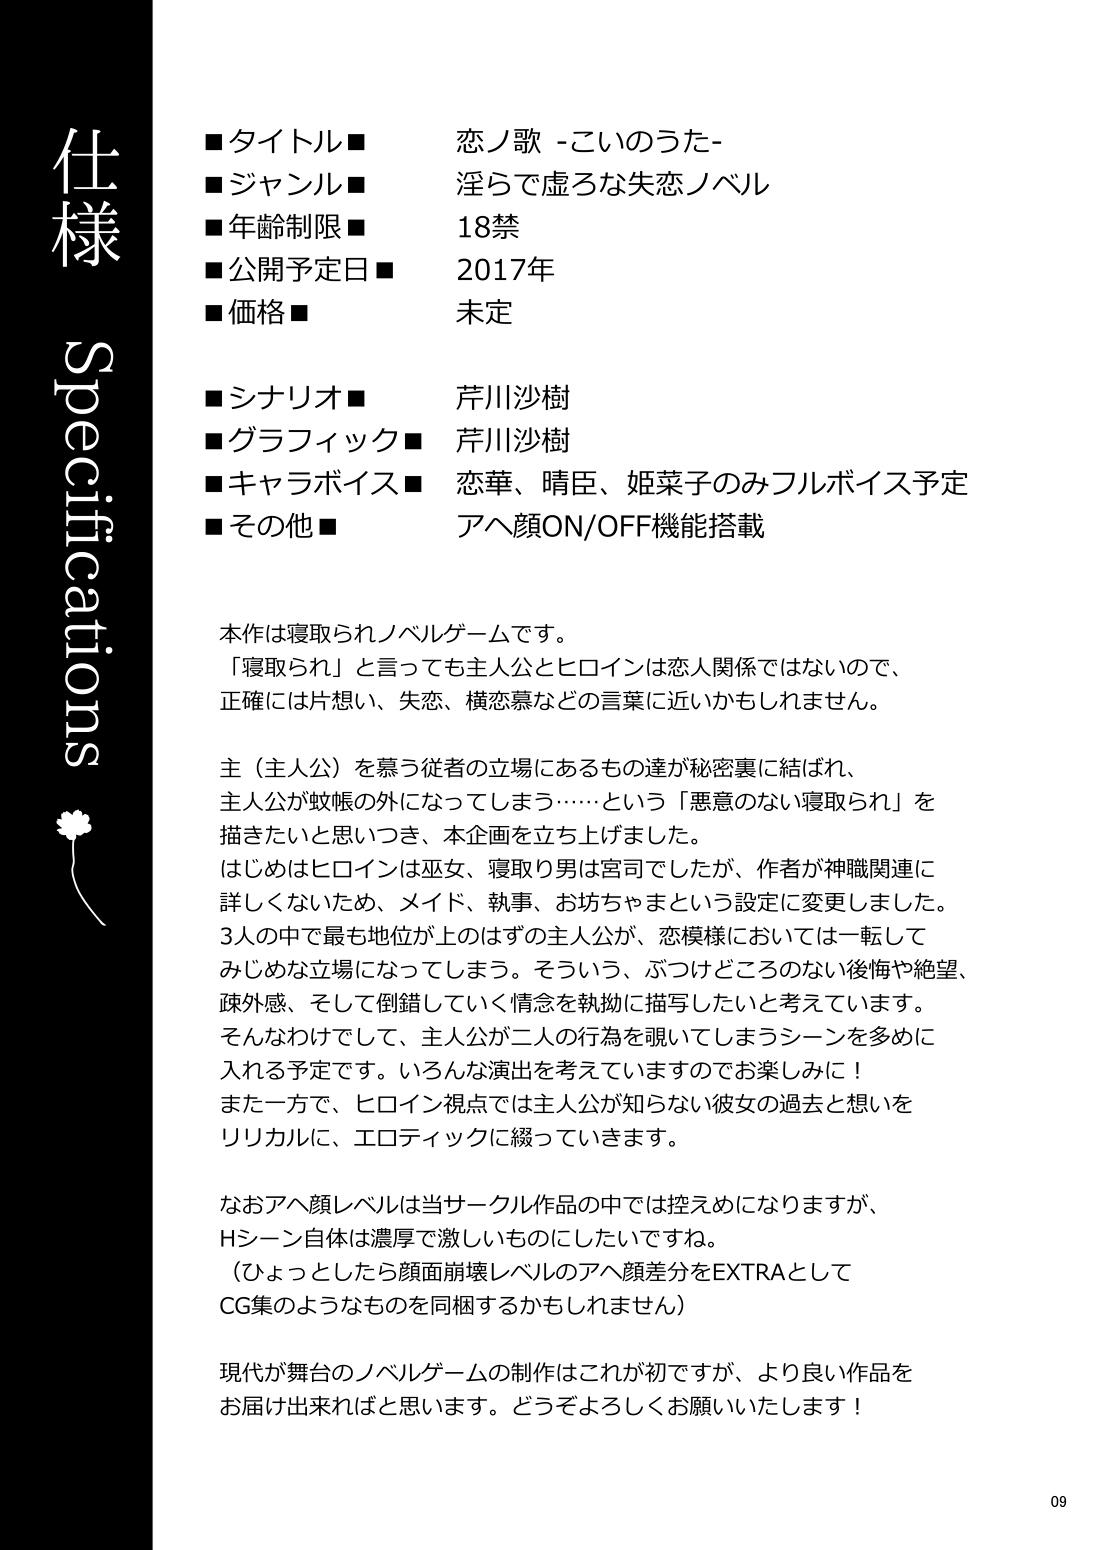 Koi no Uta Preview Book 8